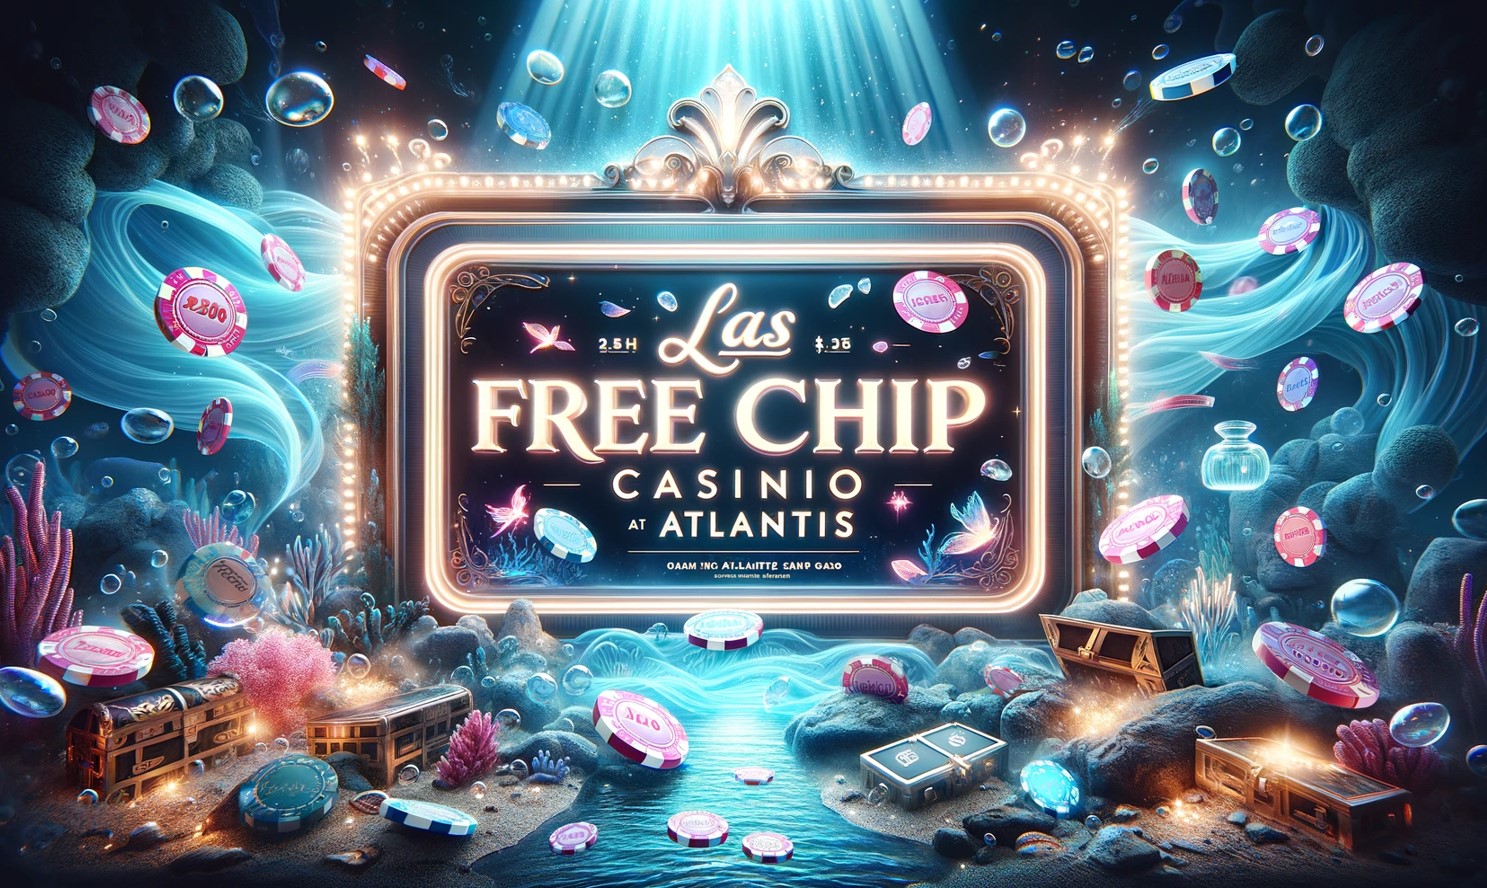 Las Atlantis casino free chip 1